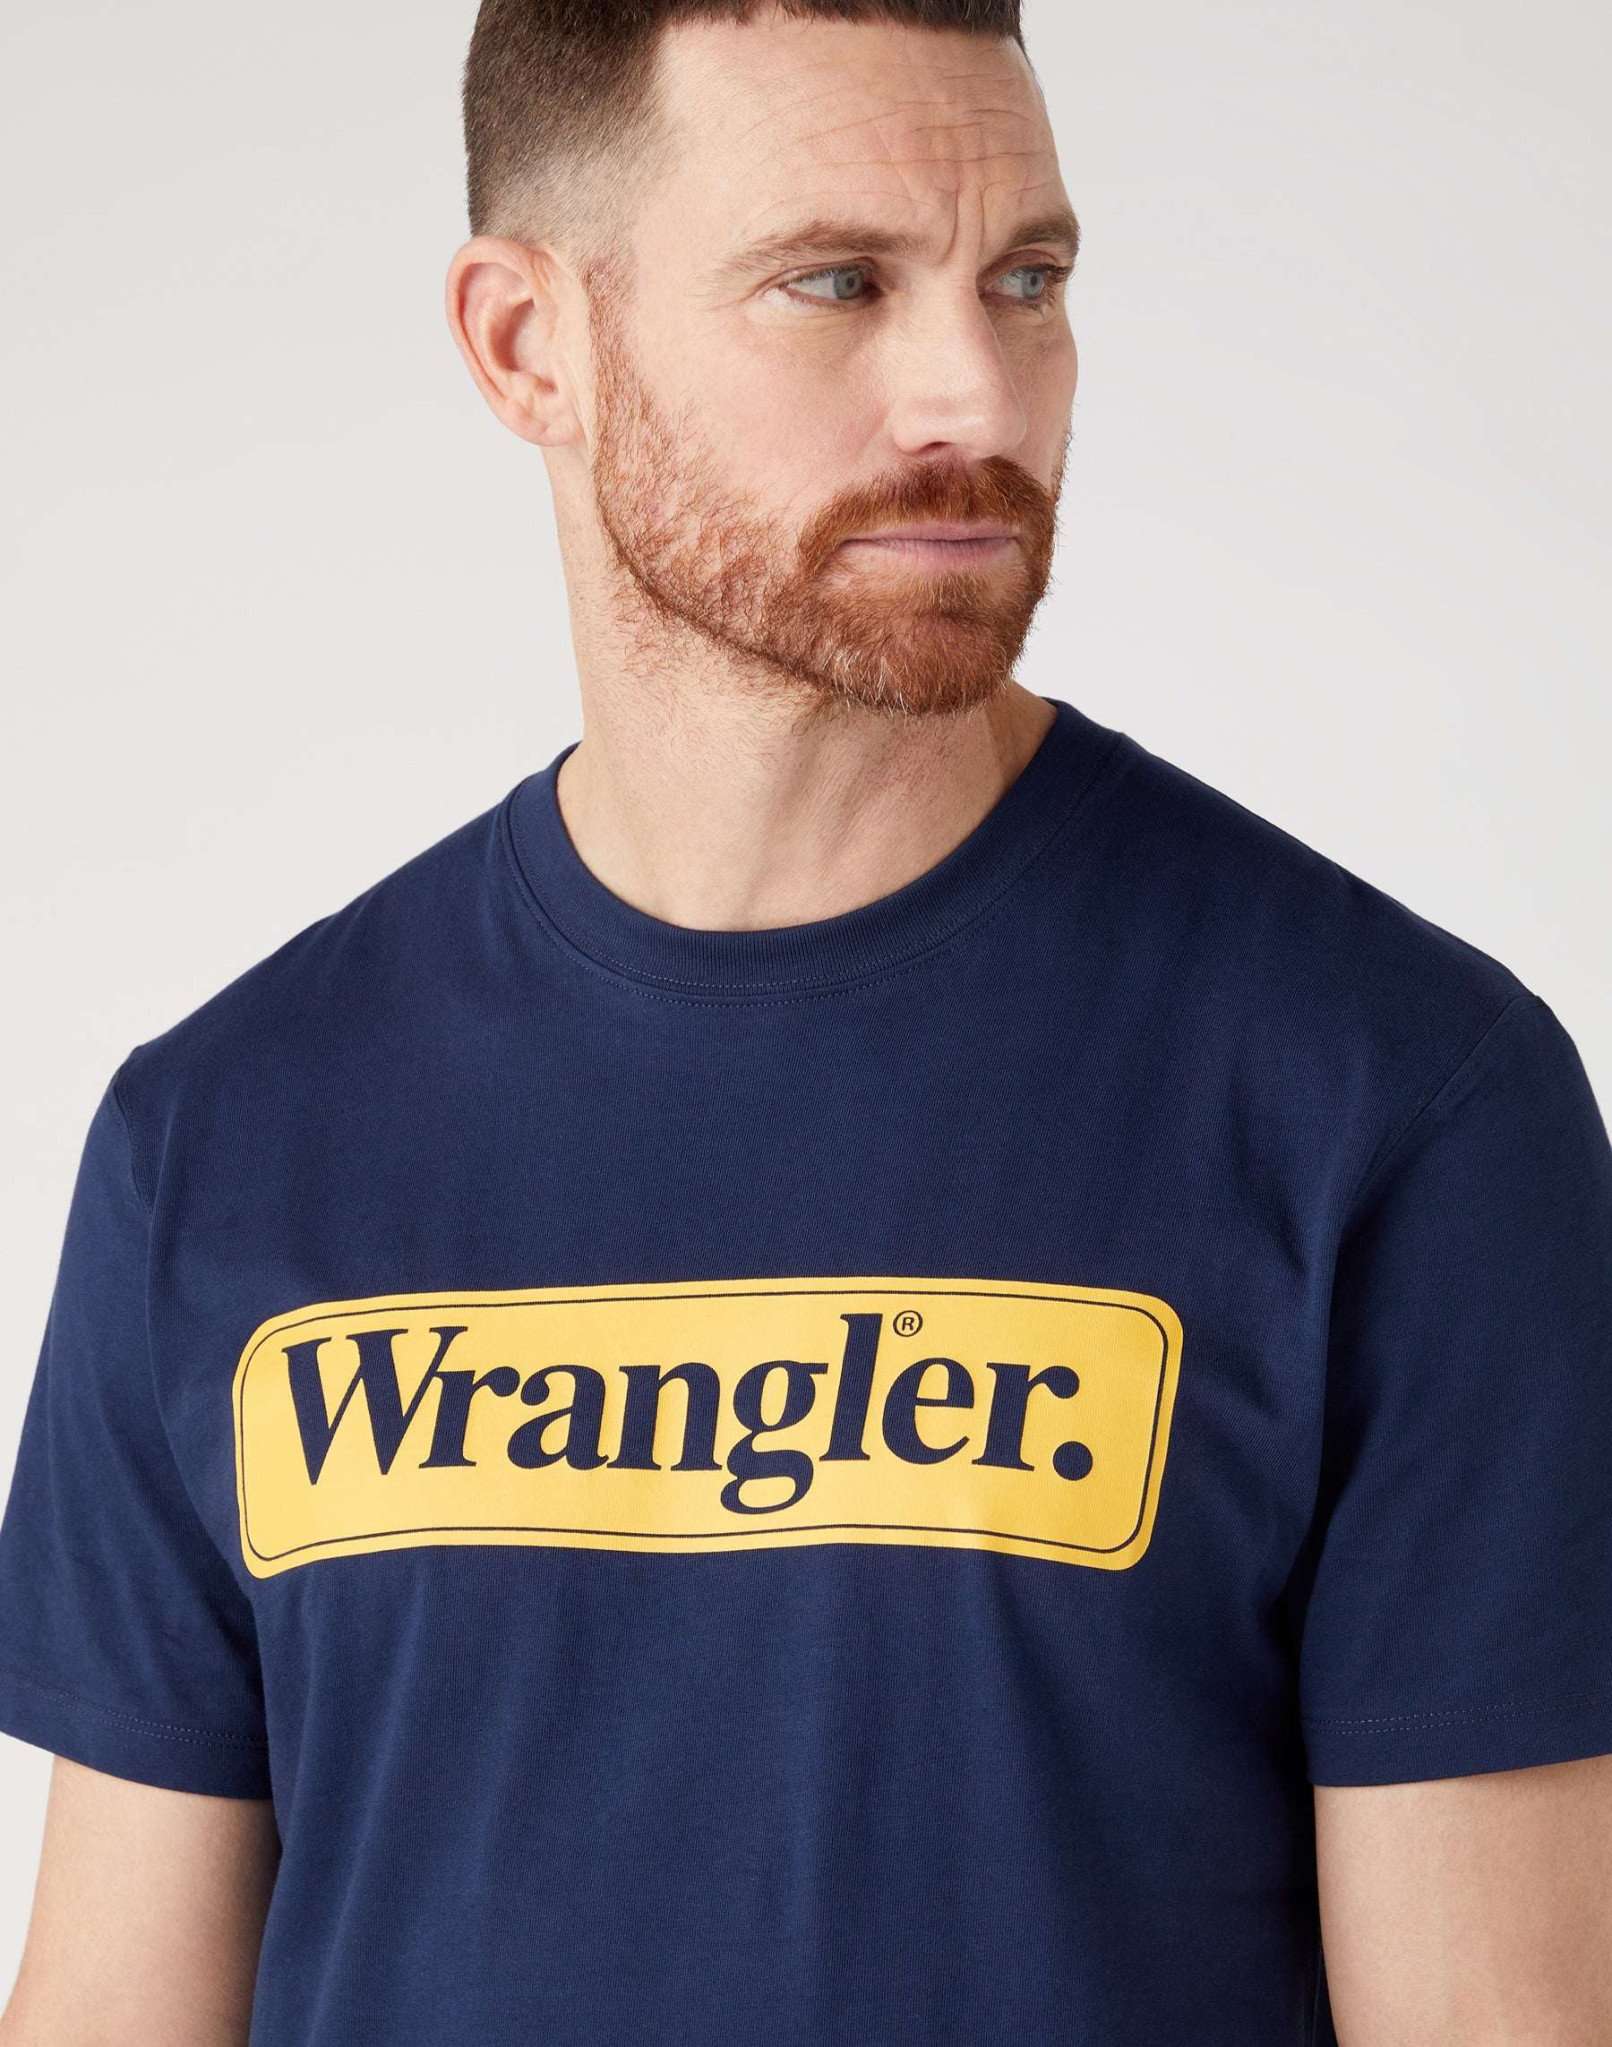 Wrangler Tee in Navy T-Shirts Wrangler   